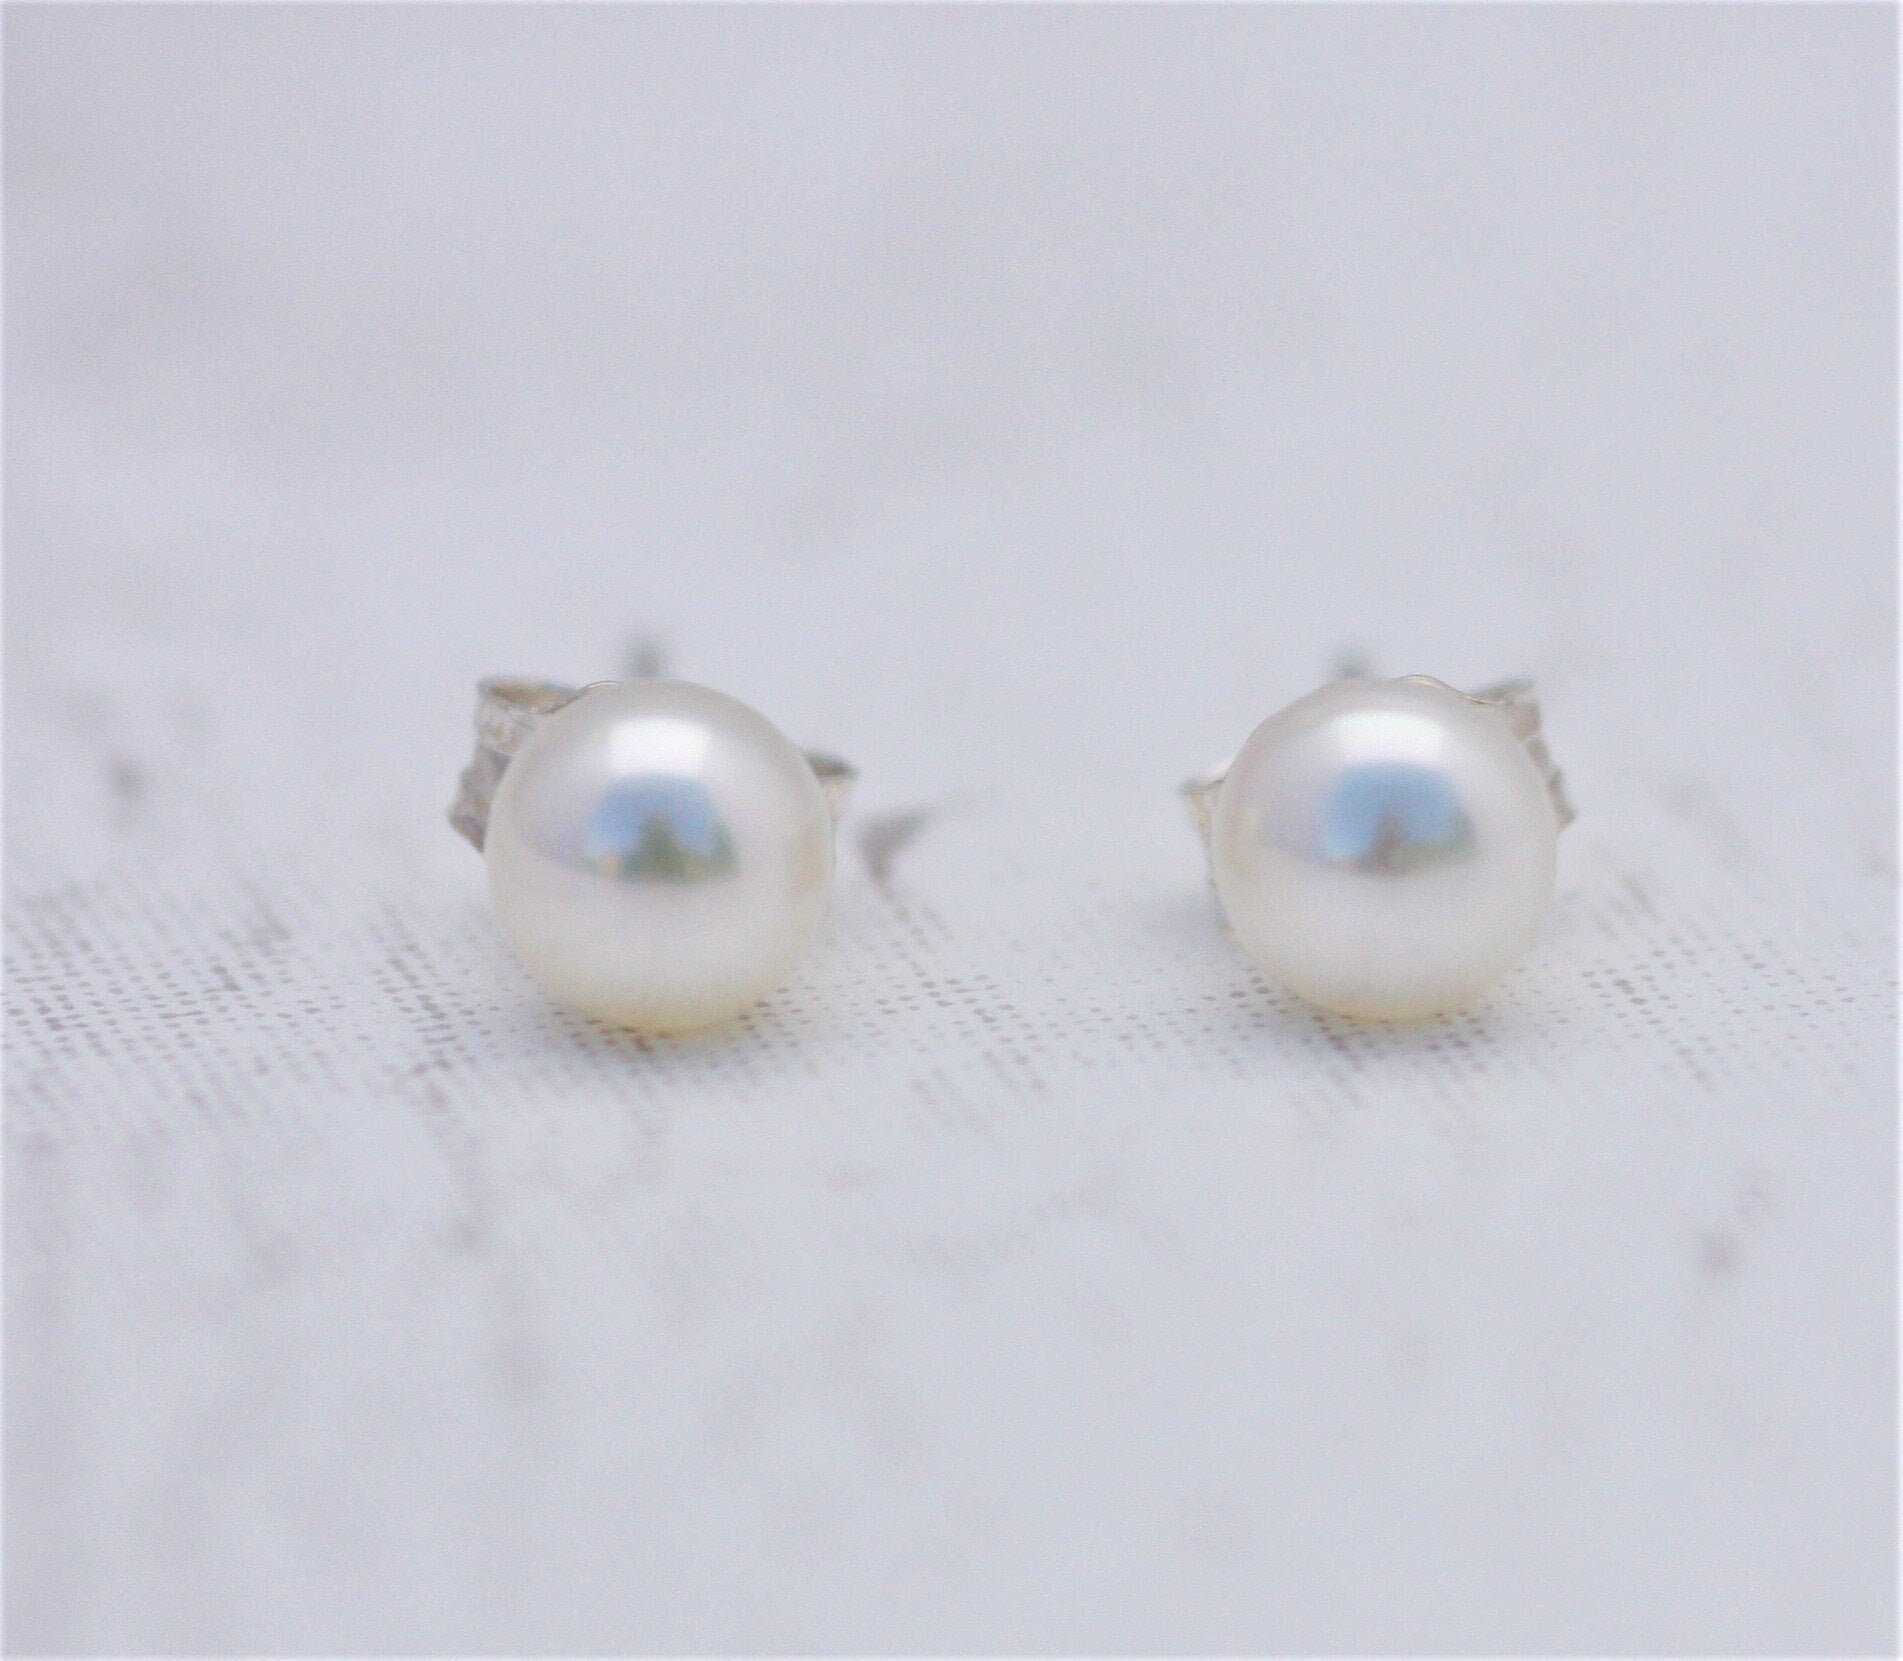 Pearl Bridal Earrings Pearl Stud Earrings Bridesmaid Gifts Pearl Studs Freshwater Pearl Earrings Silver Pearl Earrings June Birthstone